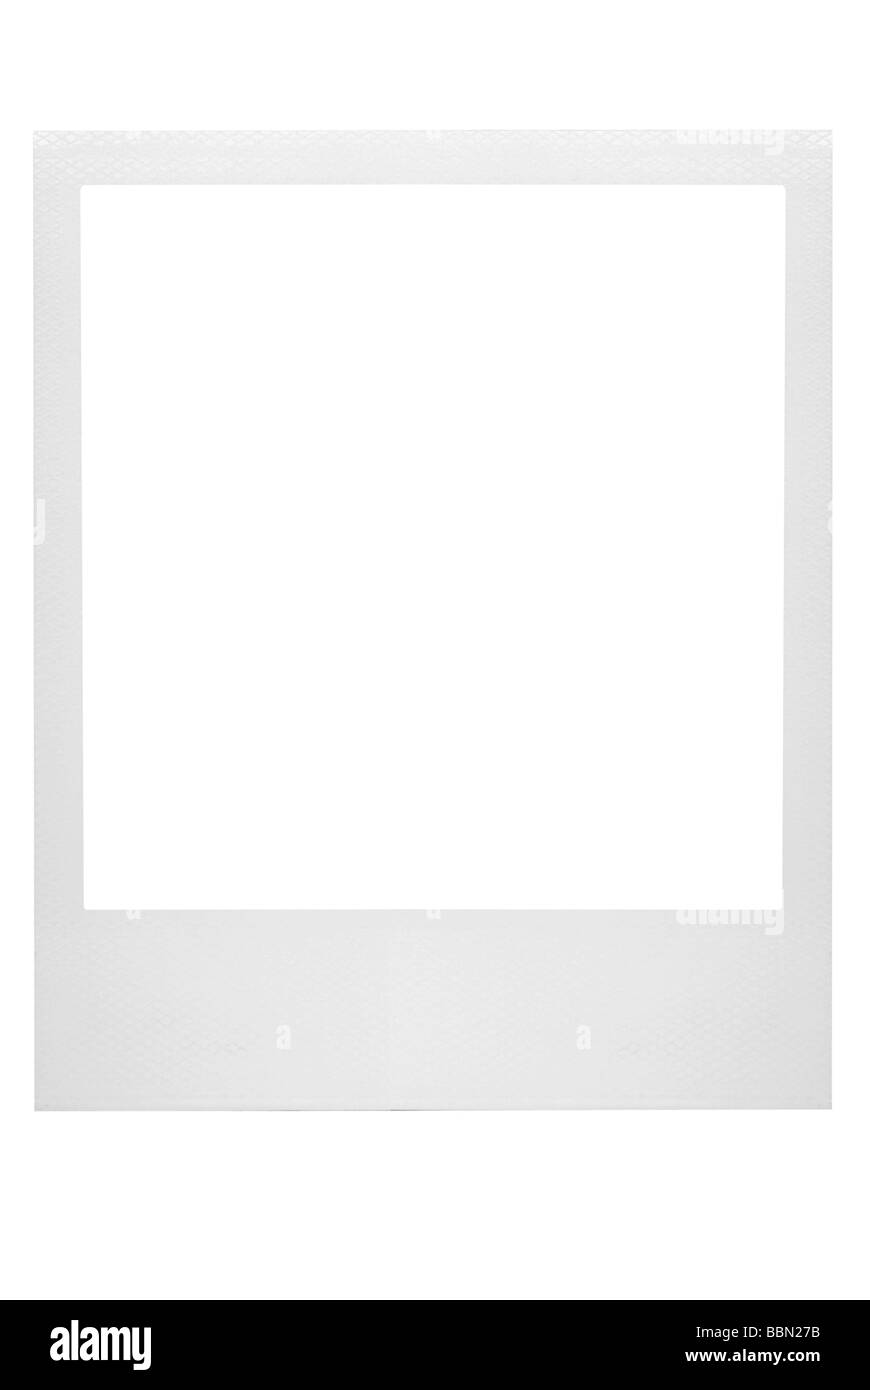 Polaroid Bild mit leeren Rahmen Stockfotografie - Alamy